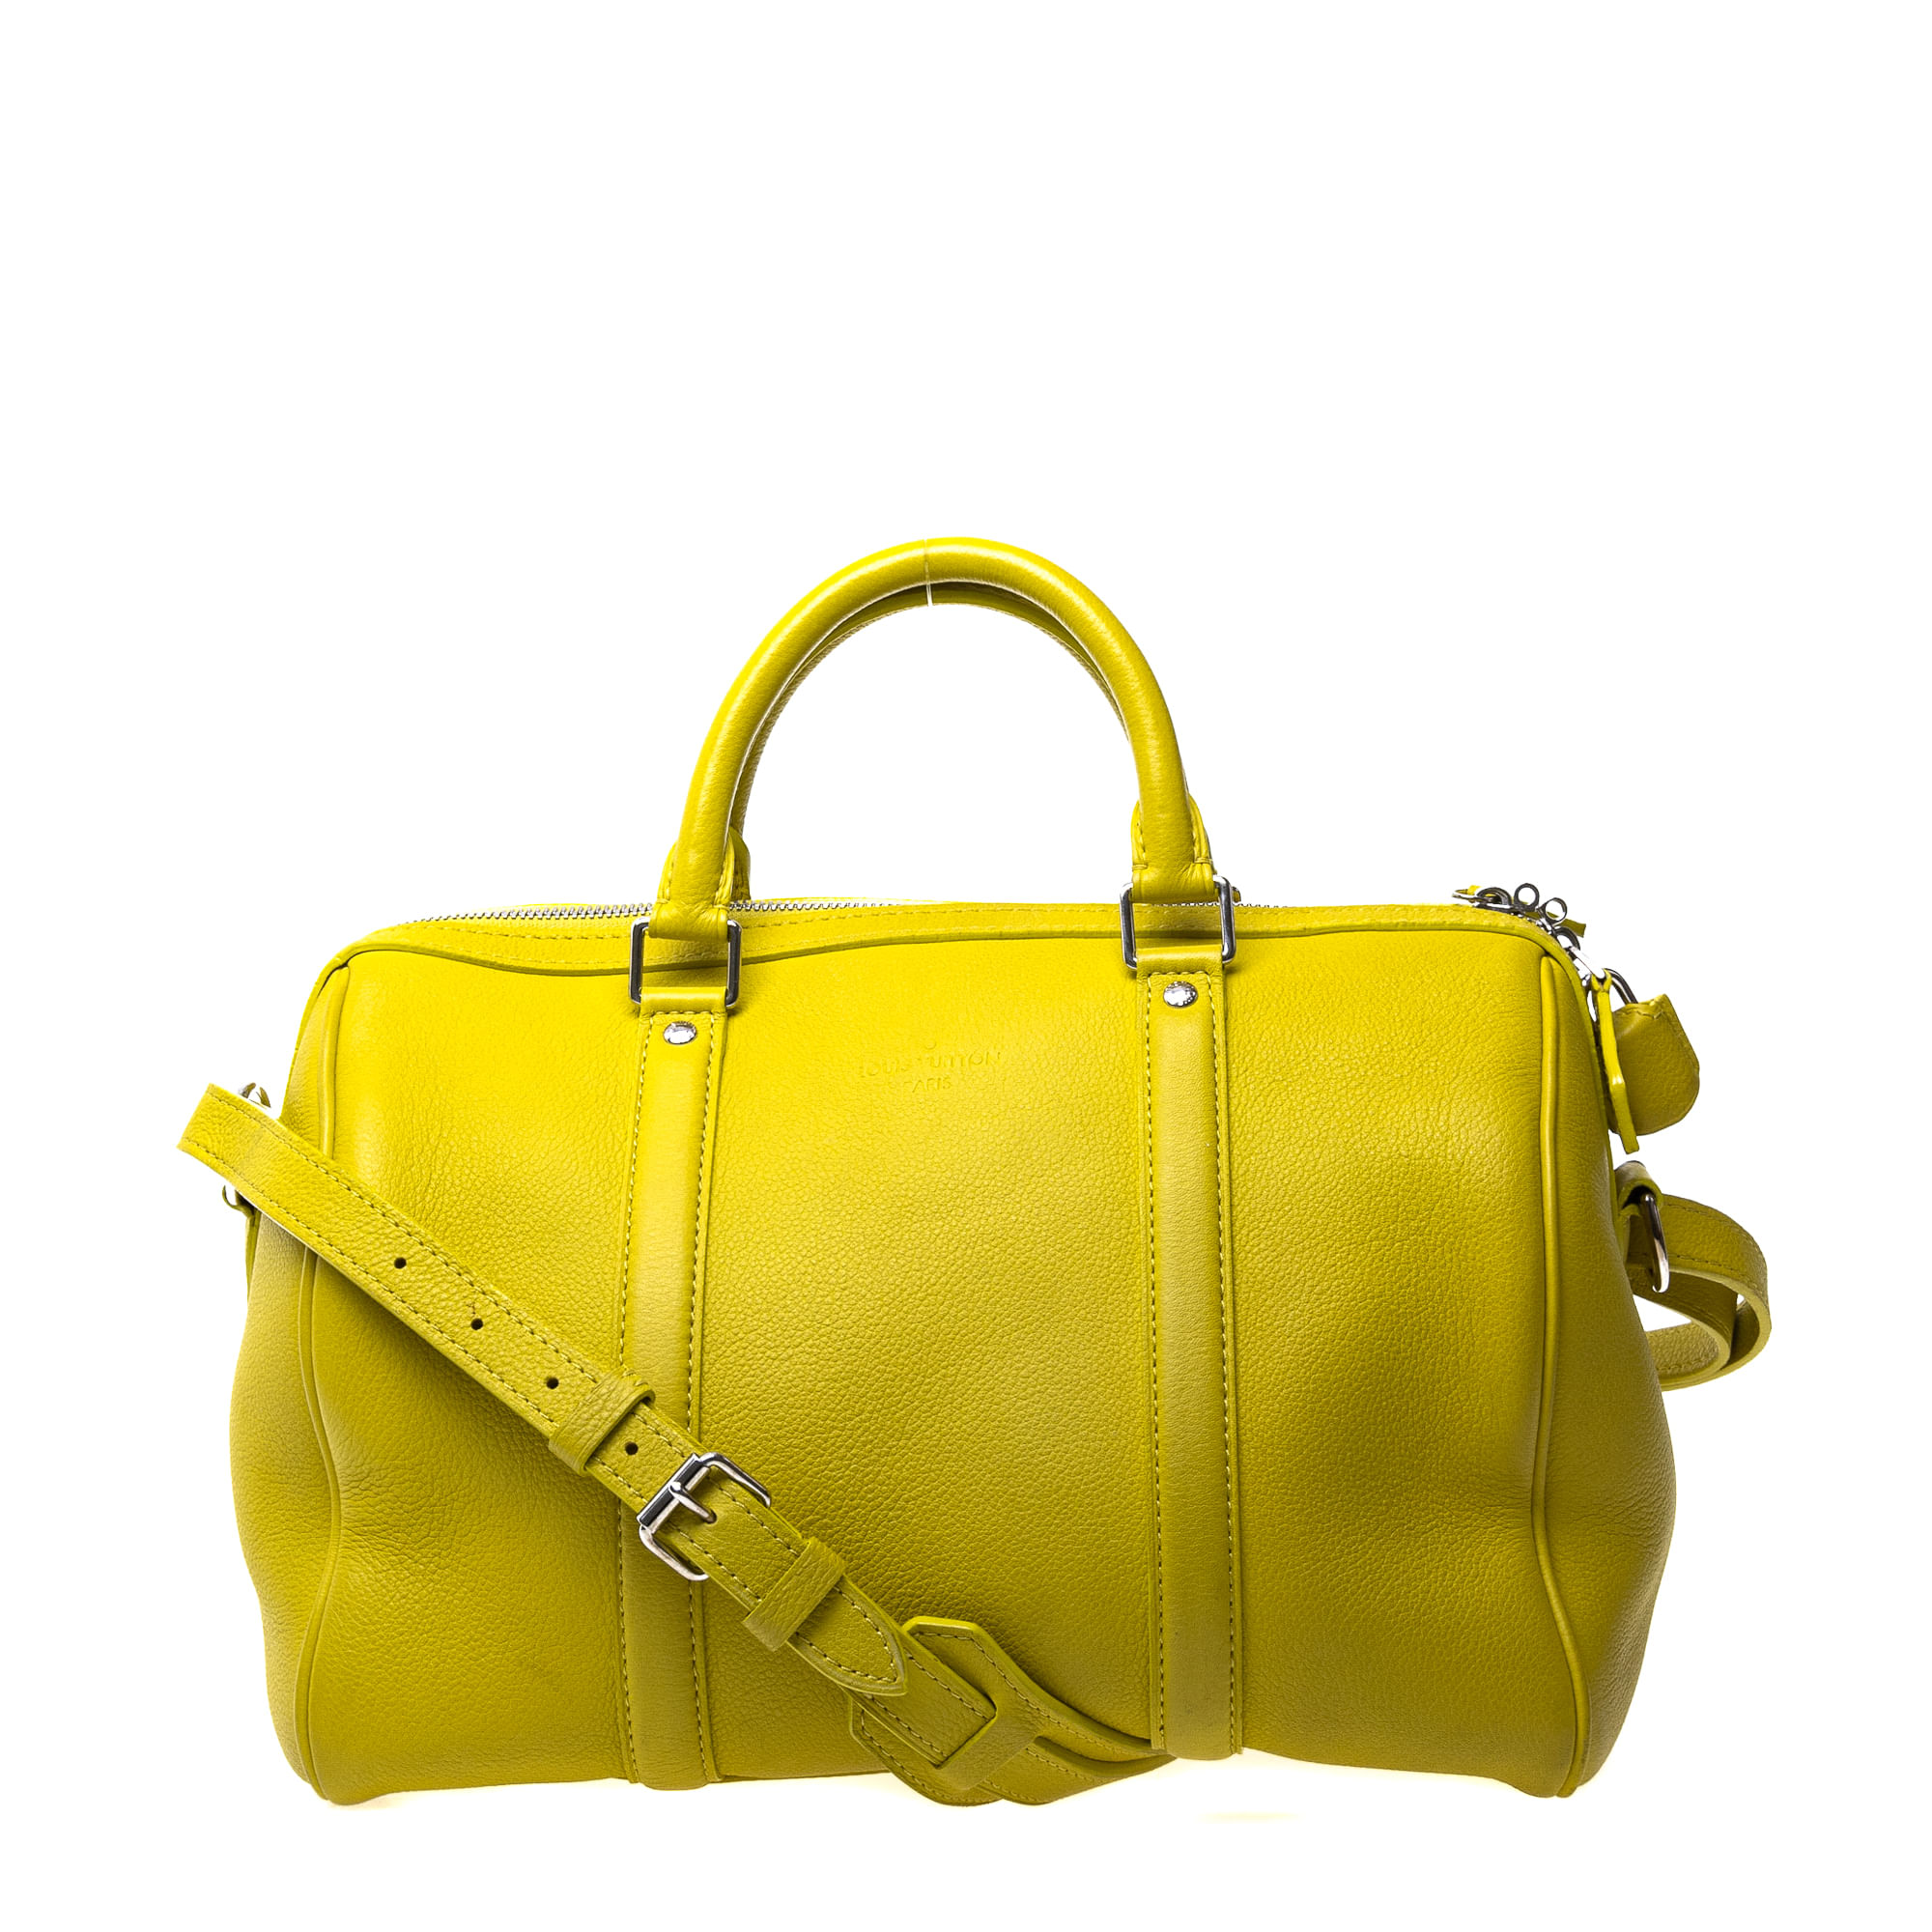 Bolsas Louis Vuitton: qual é a mais clássica?